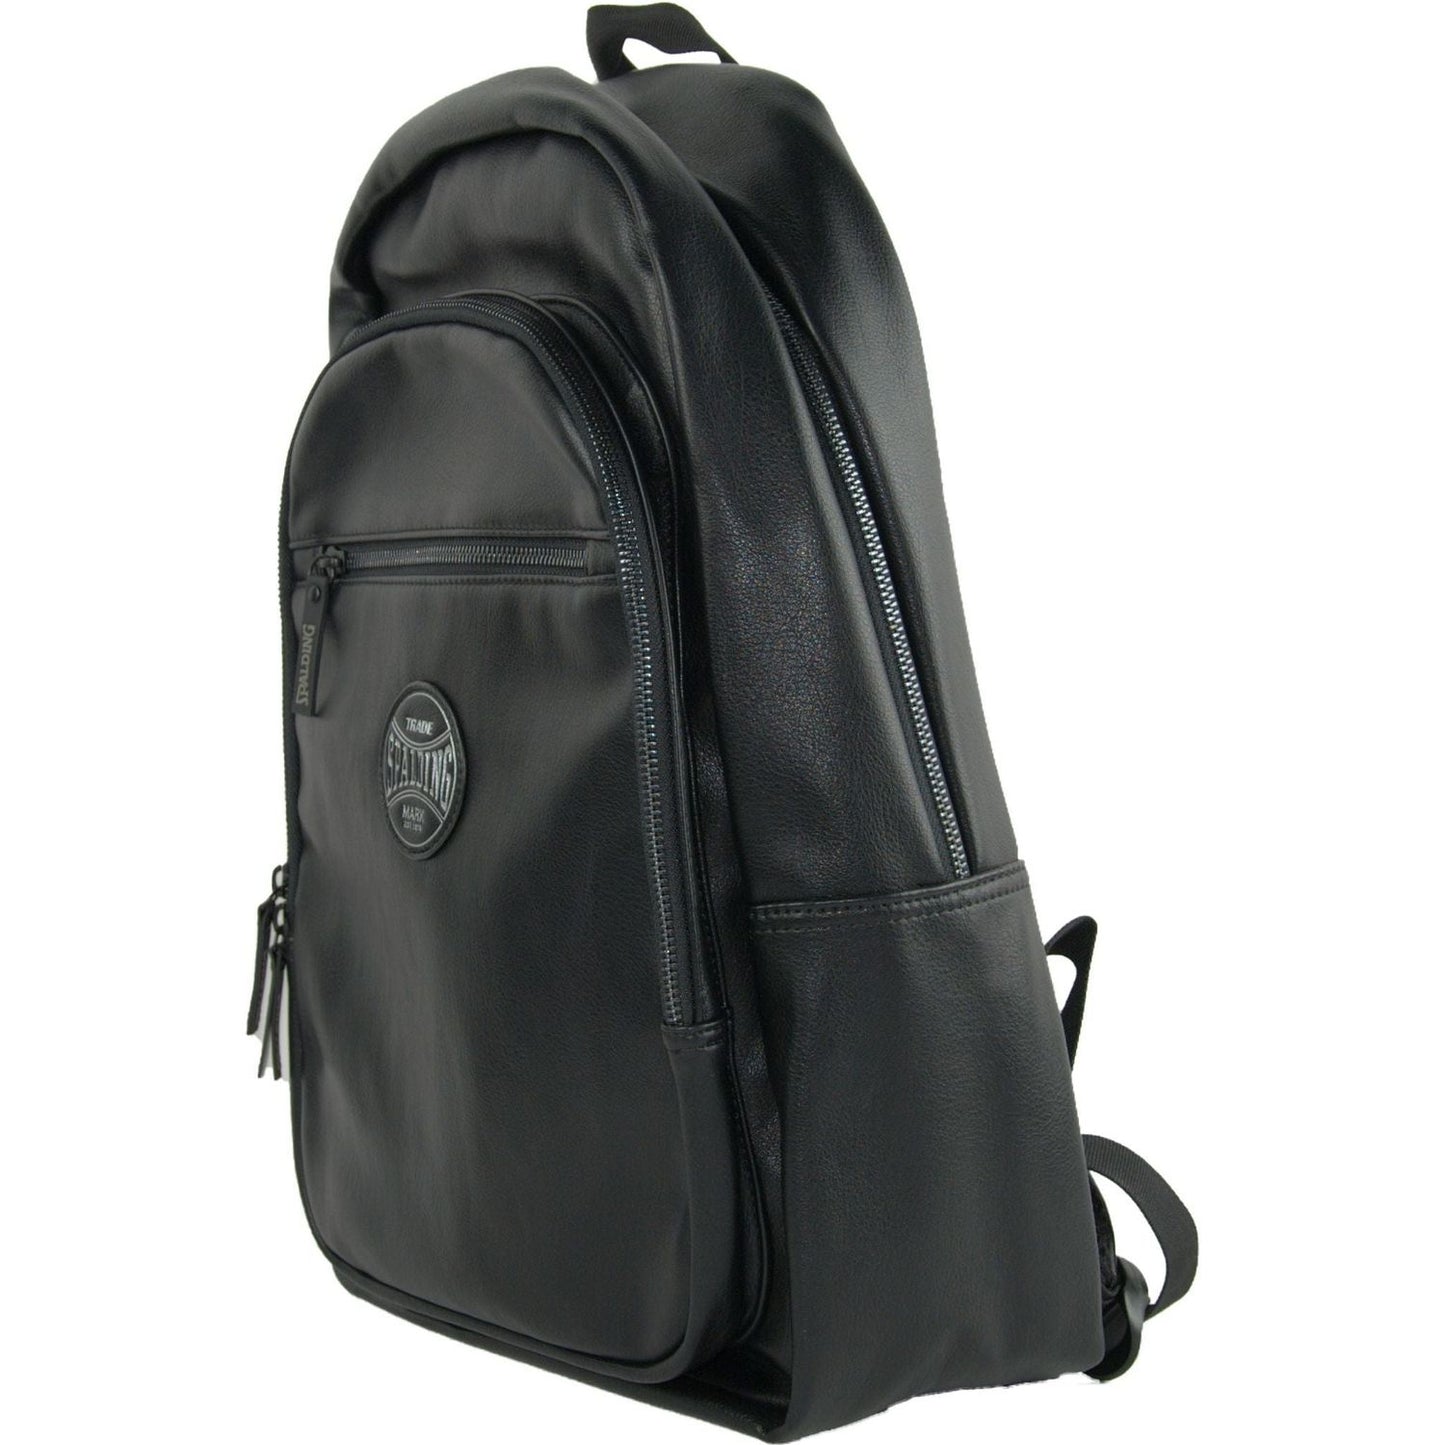 A.G. Spalding & Bros Sleek Black Pro Backpack For Men black-polyurethane-backpack-1 stock_product_image_748_165094148-71d4a1d8-eb6.jpg